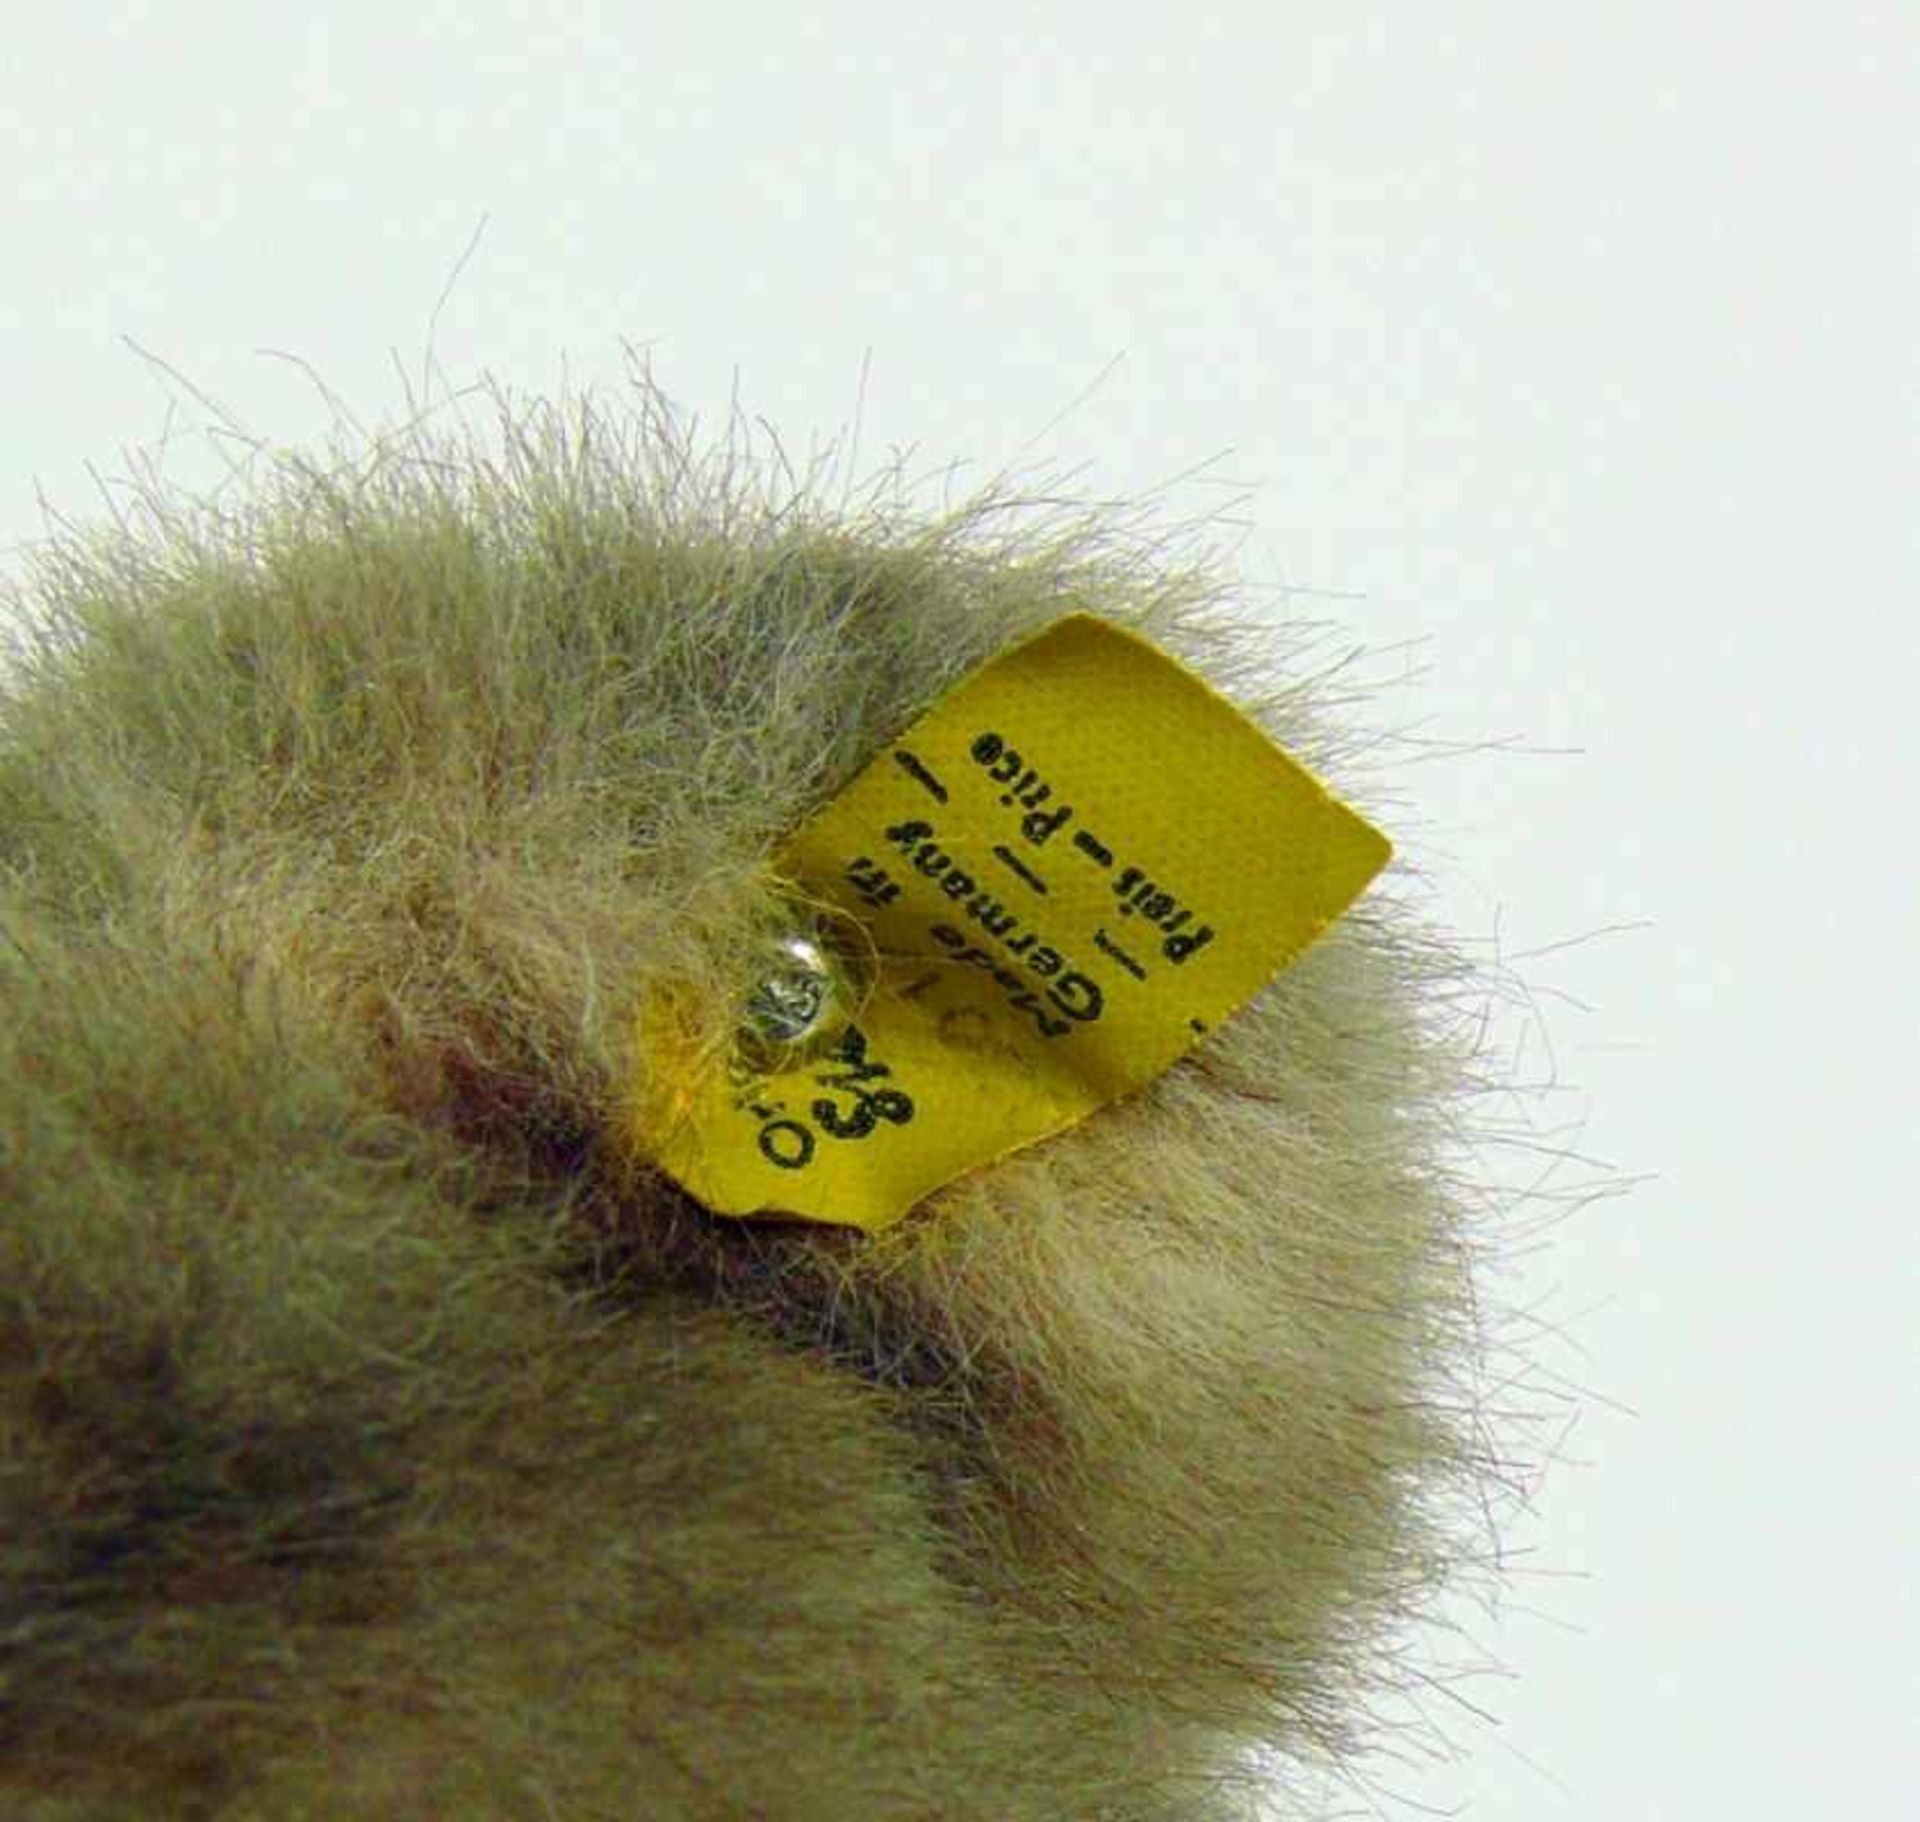 Steiff-Teddybär "Minky Zotty"mit Knopf und Schild im Ohr; pelzartiges Gewebe; Periode 1969 - 1976; - Bild 3 aus 3